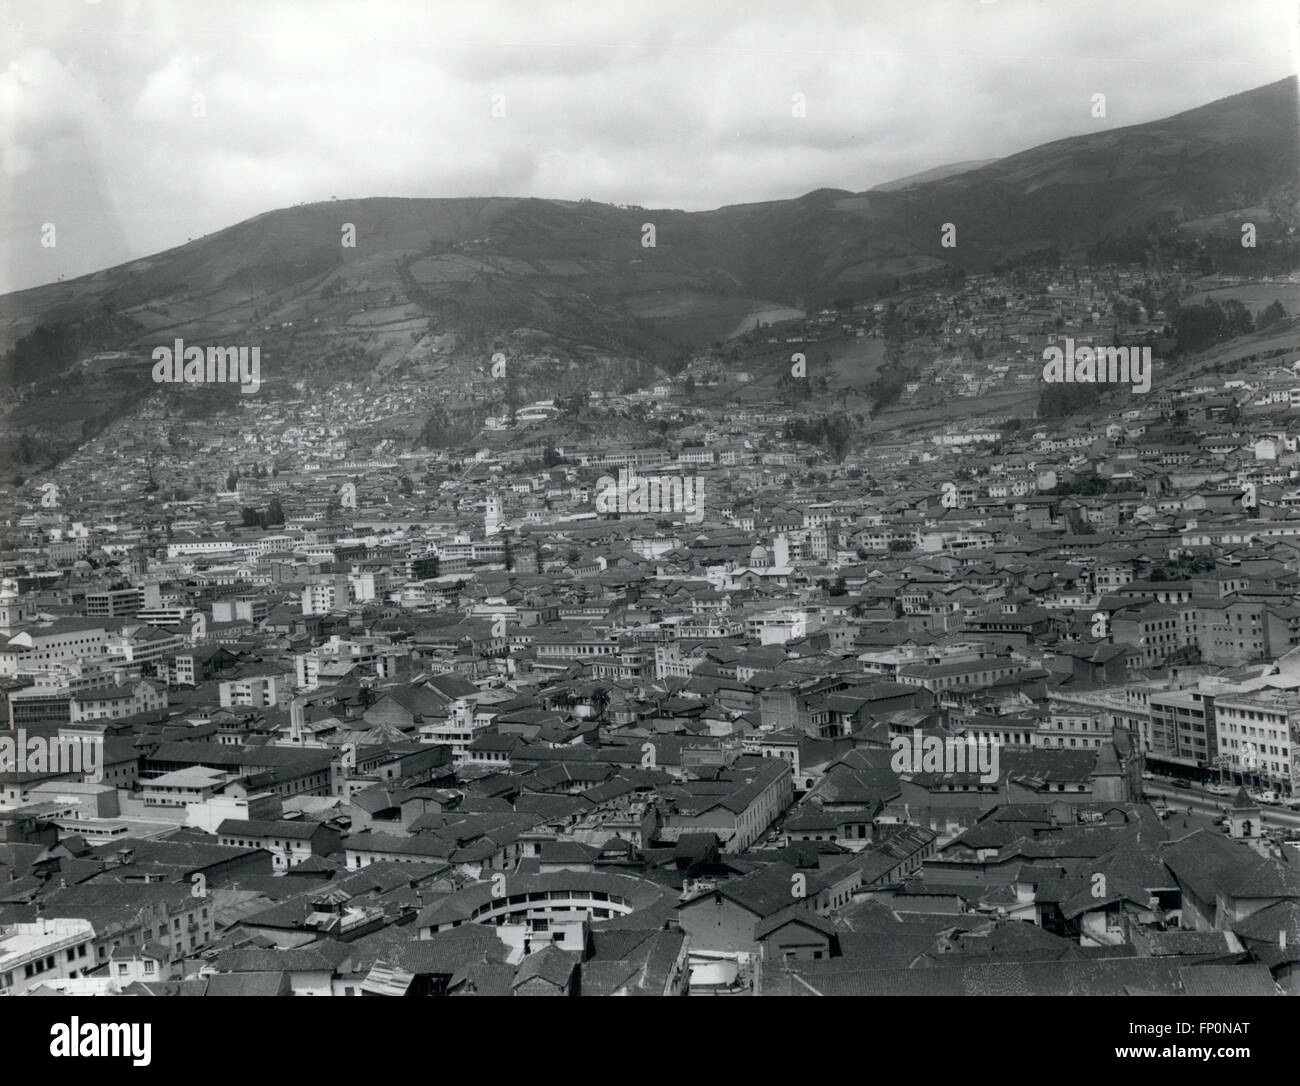 1962 - EQUATEUR - Quito : Quito est vue d'Ichimbia Killy. Nous pouvons apprécier la ville antique avec des rues étroites, de vieilles abrité et parfois avec de grandes constructions. © Keystone Photos USA/ZUMAPRESS.com/Alamy Live News Banque D'Images